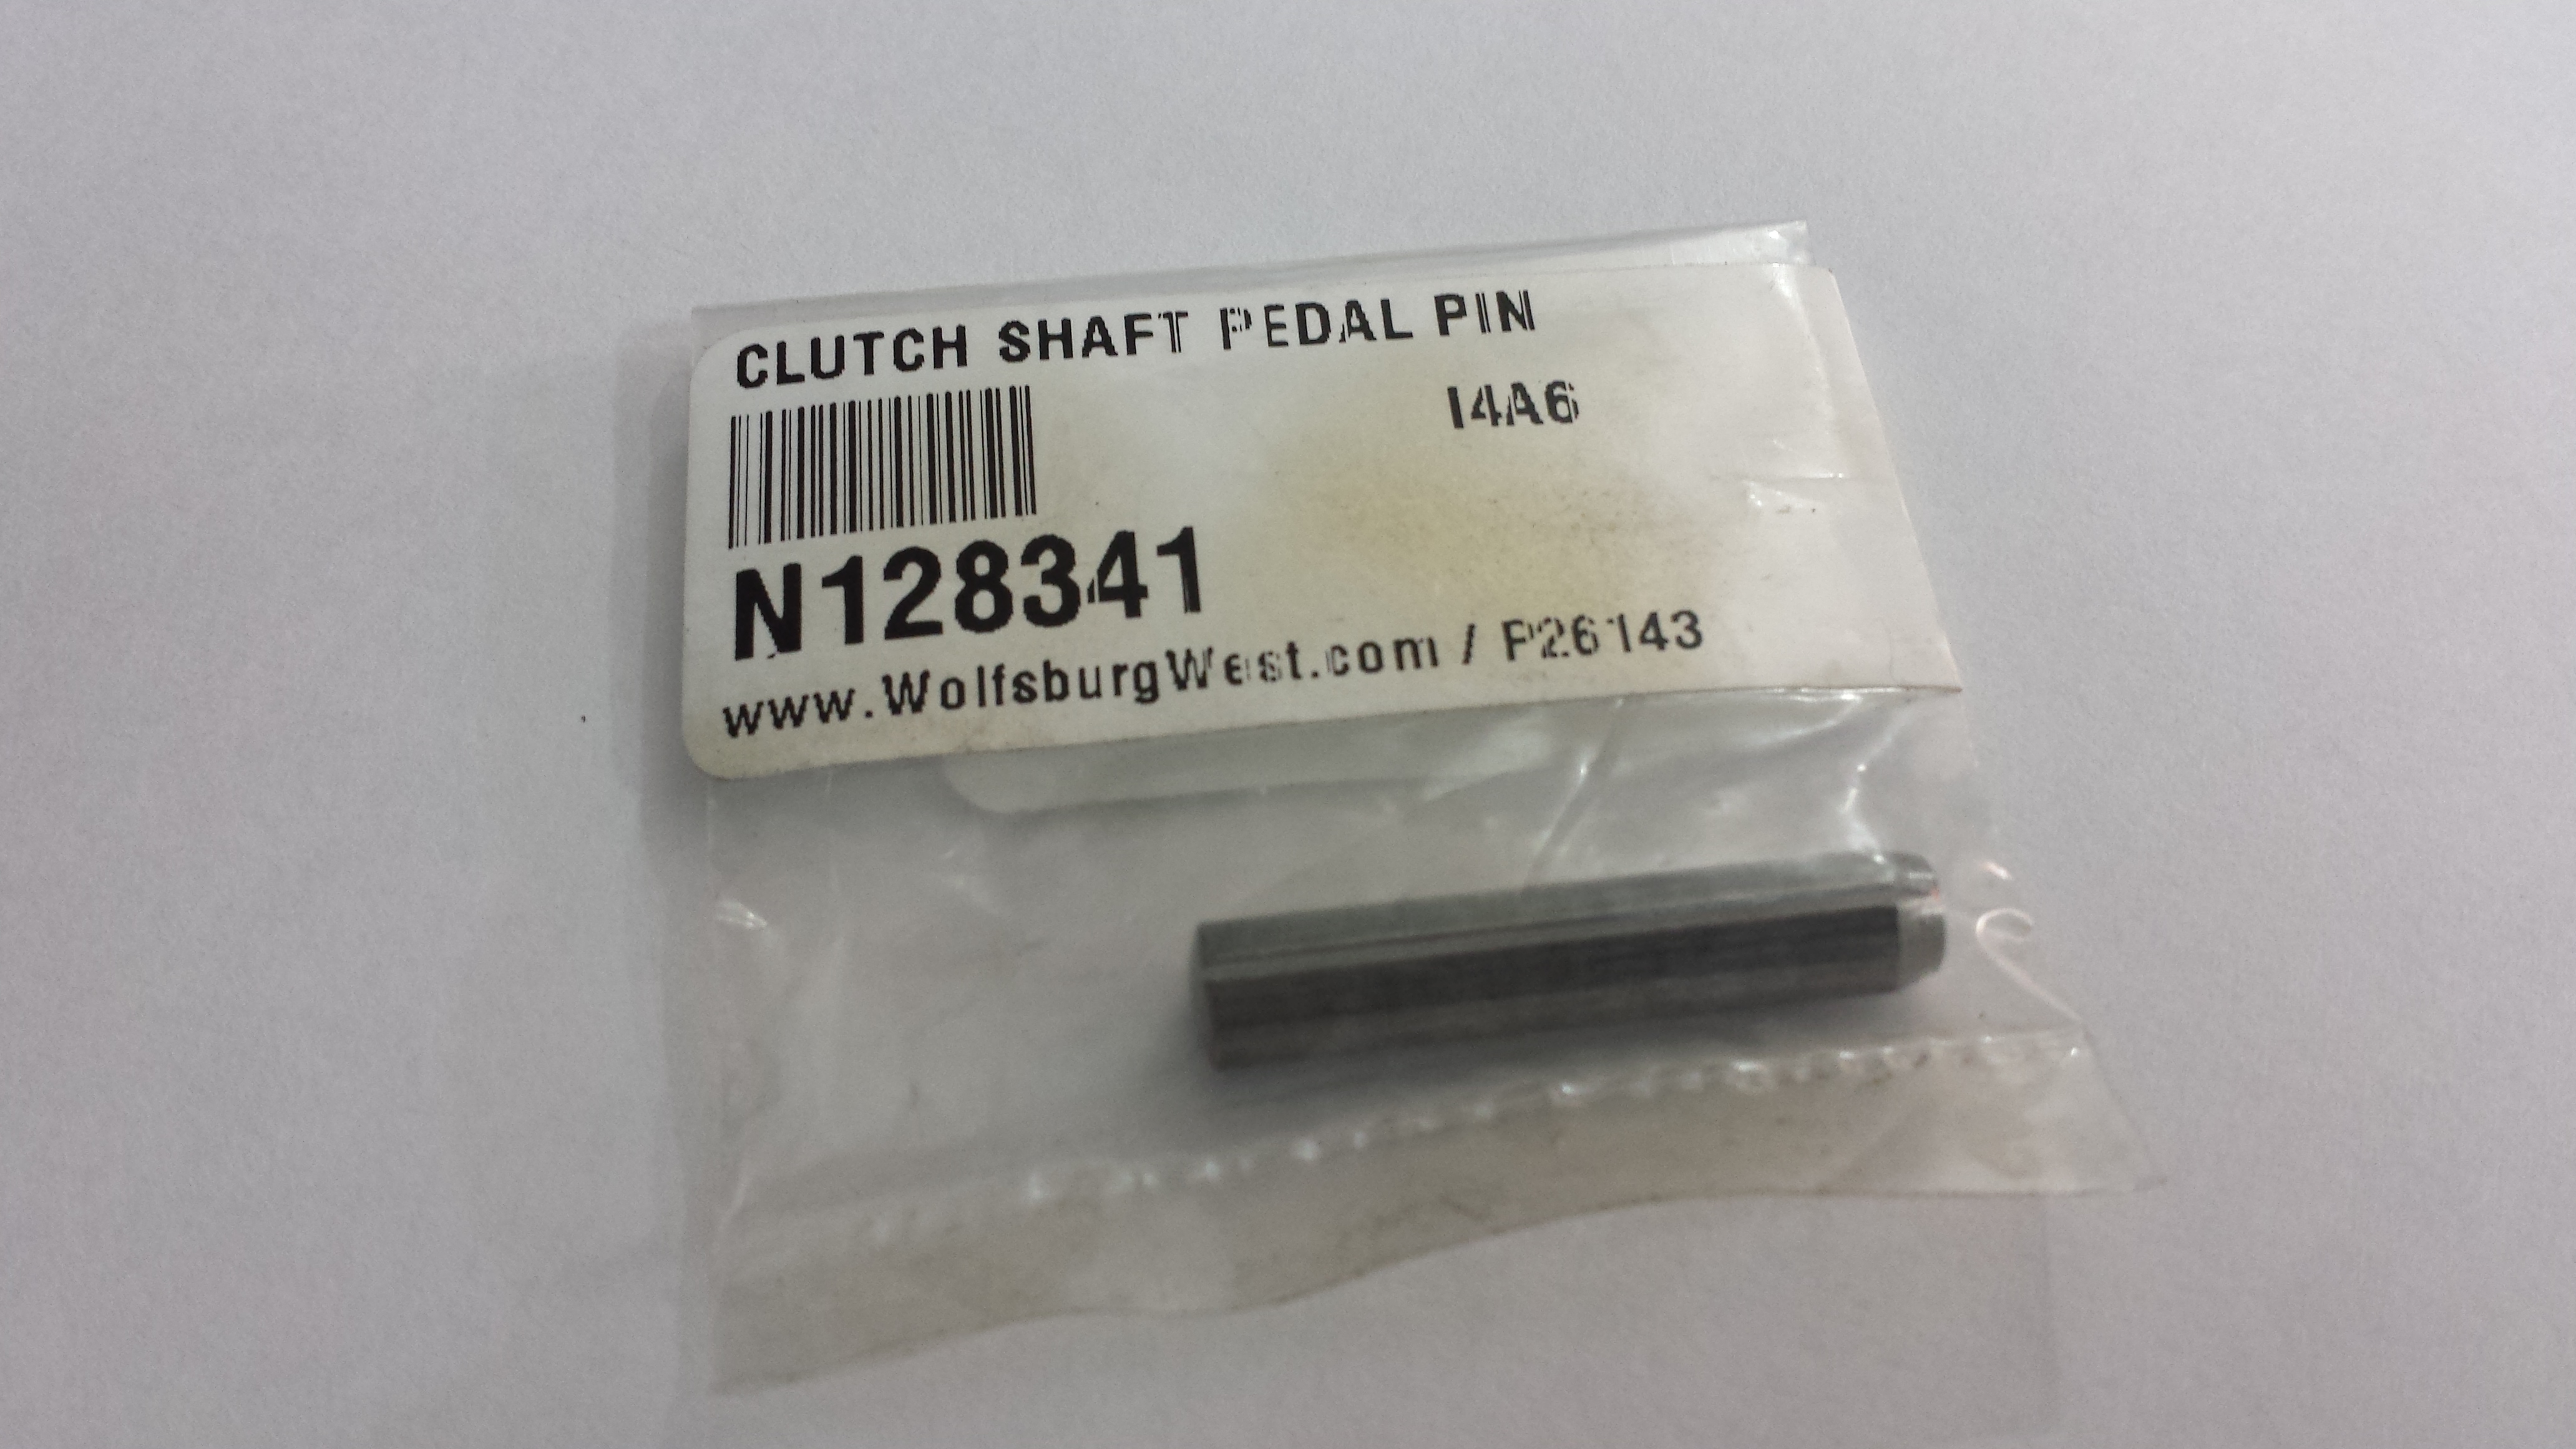 Clutch Pedal Shaft Upgrade – Big Boy